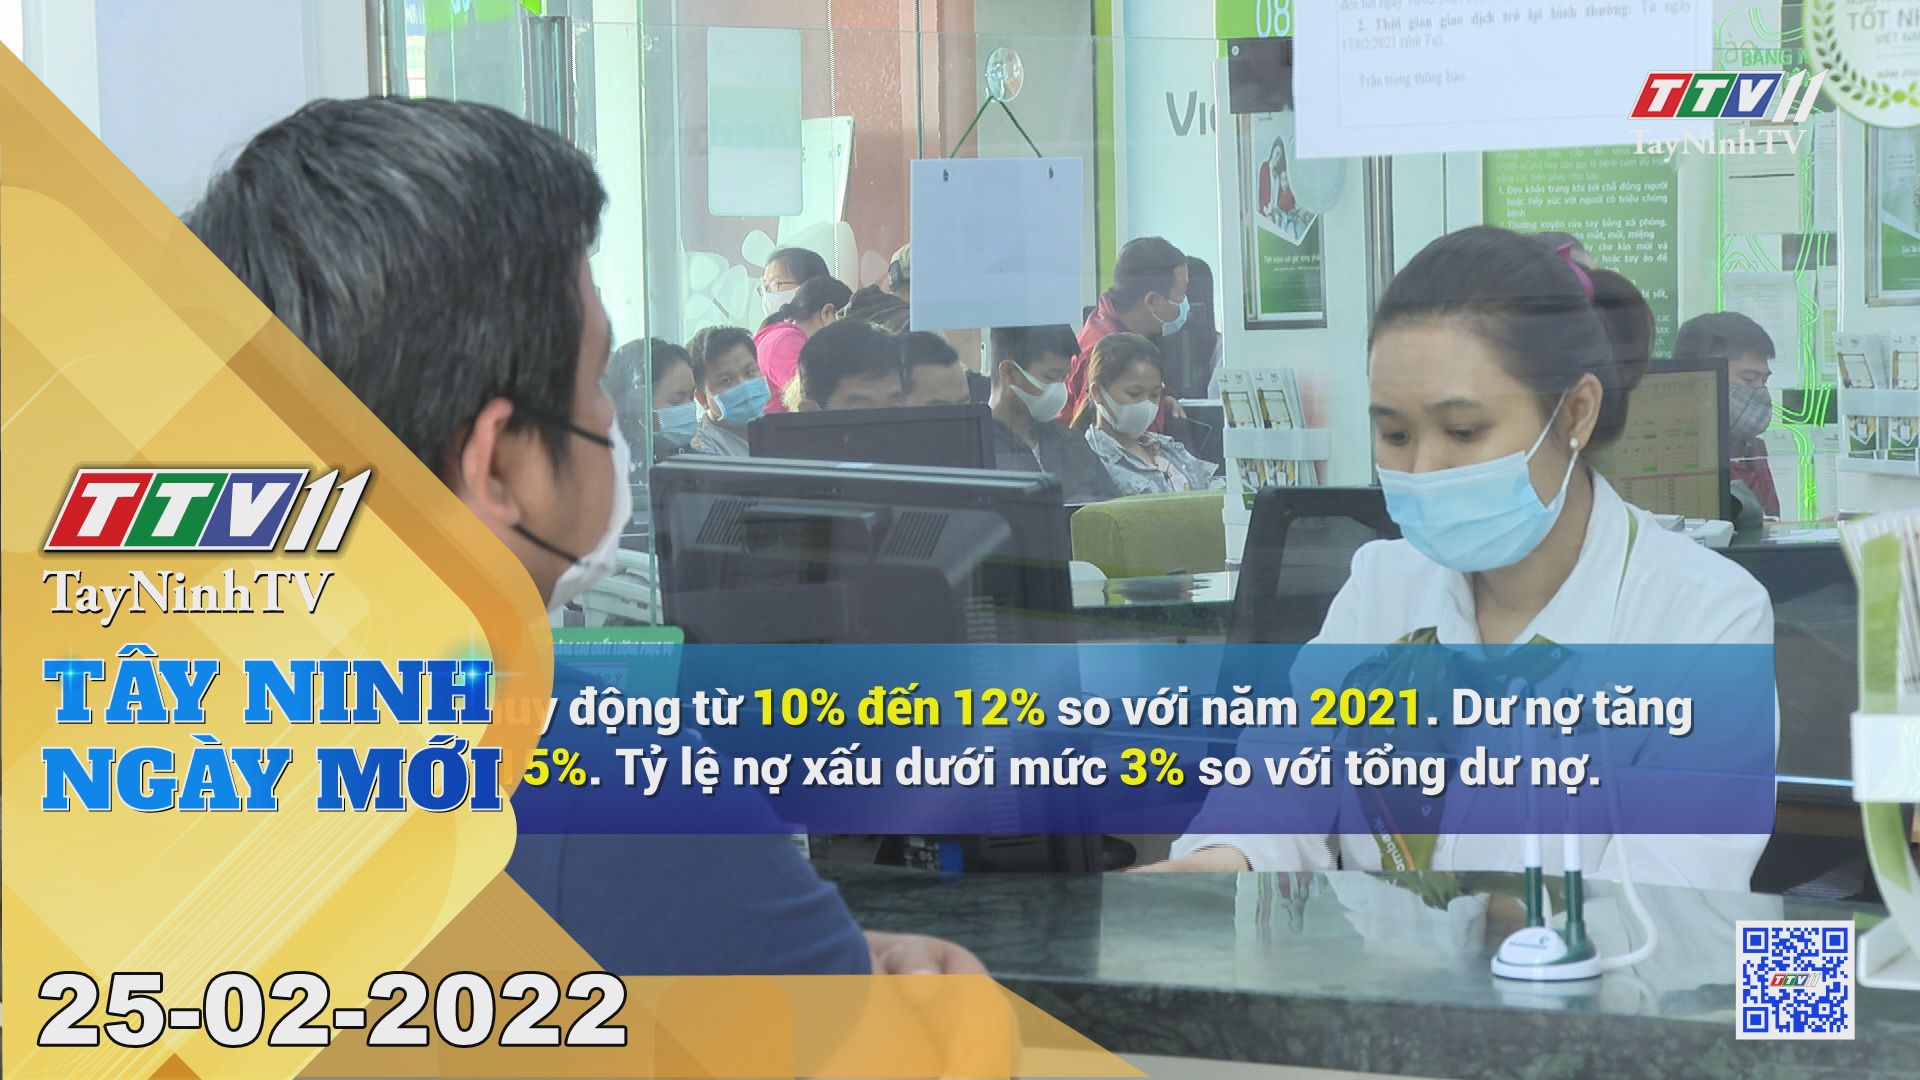 Tây Ninh ngày mới 25-02-2022 | Tin tức hôm nay | TayNinhTV